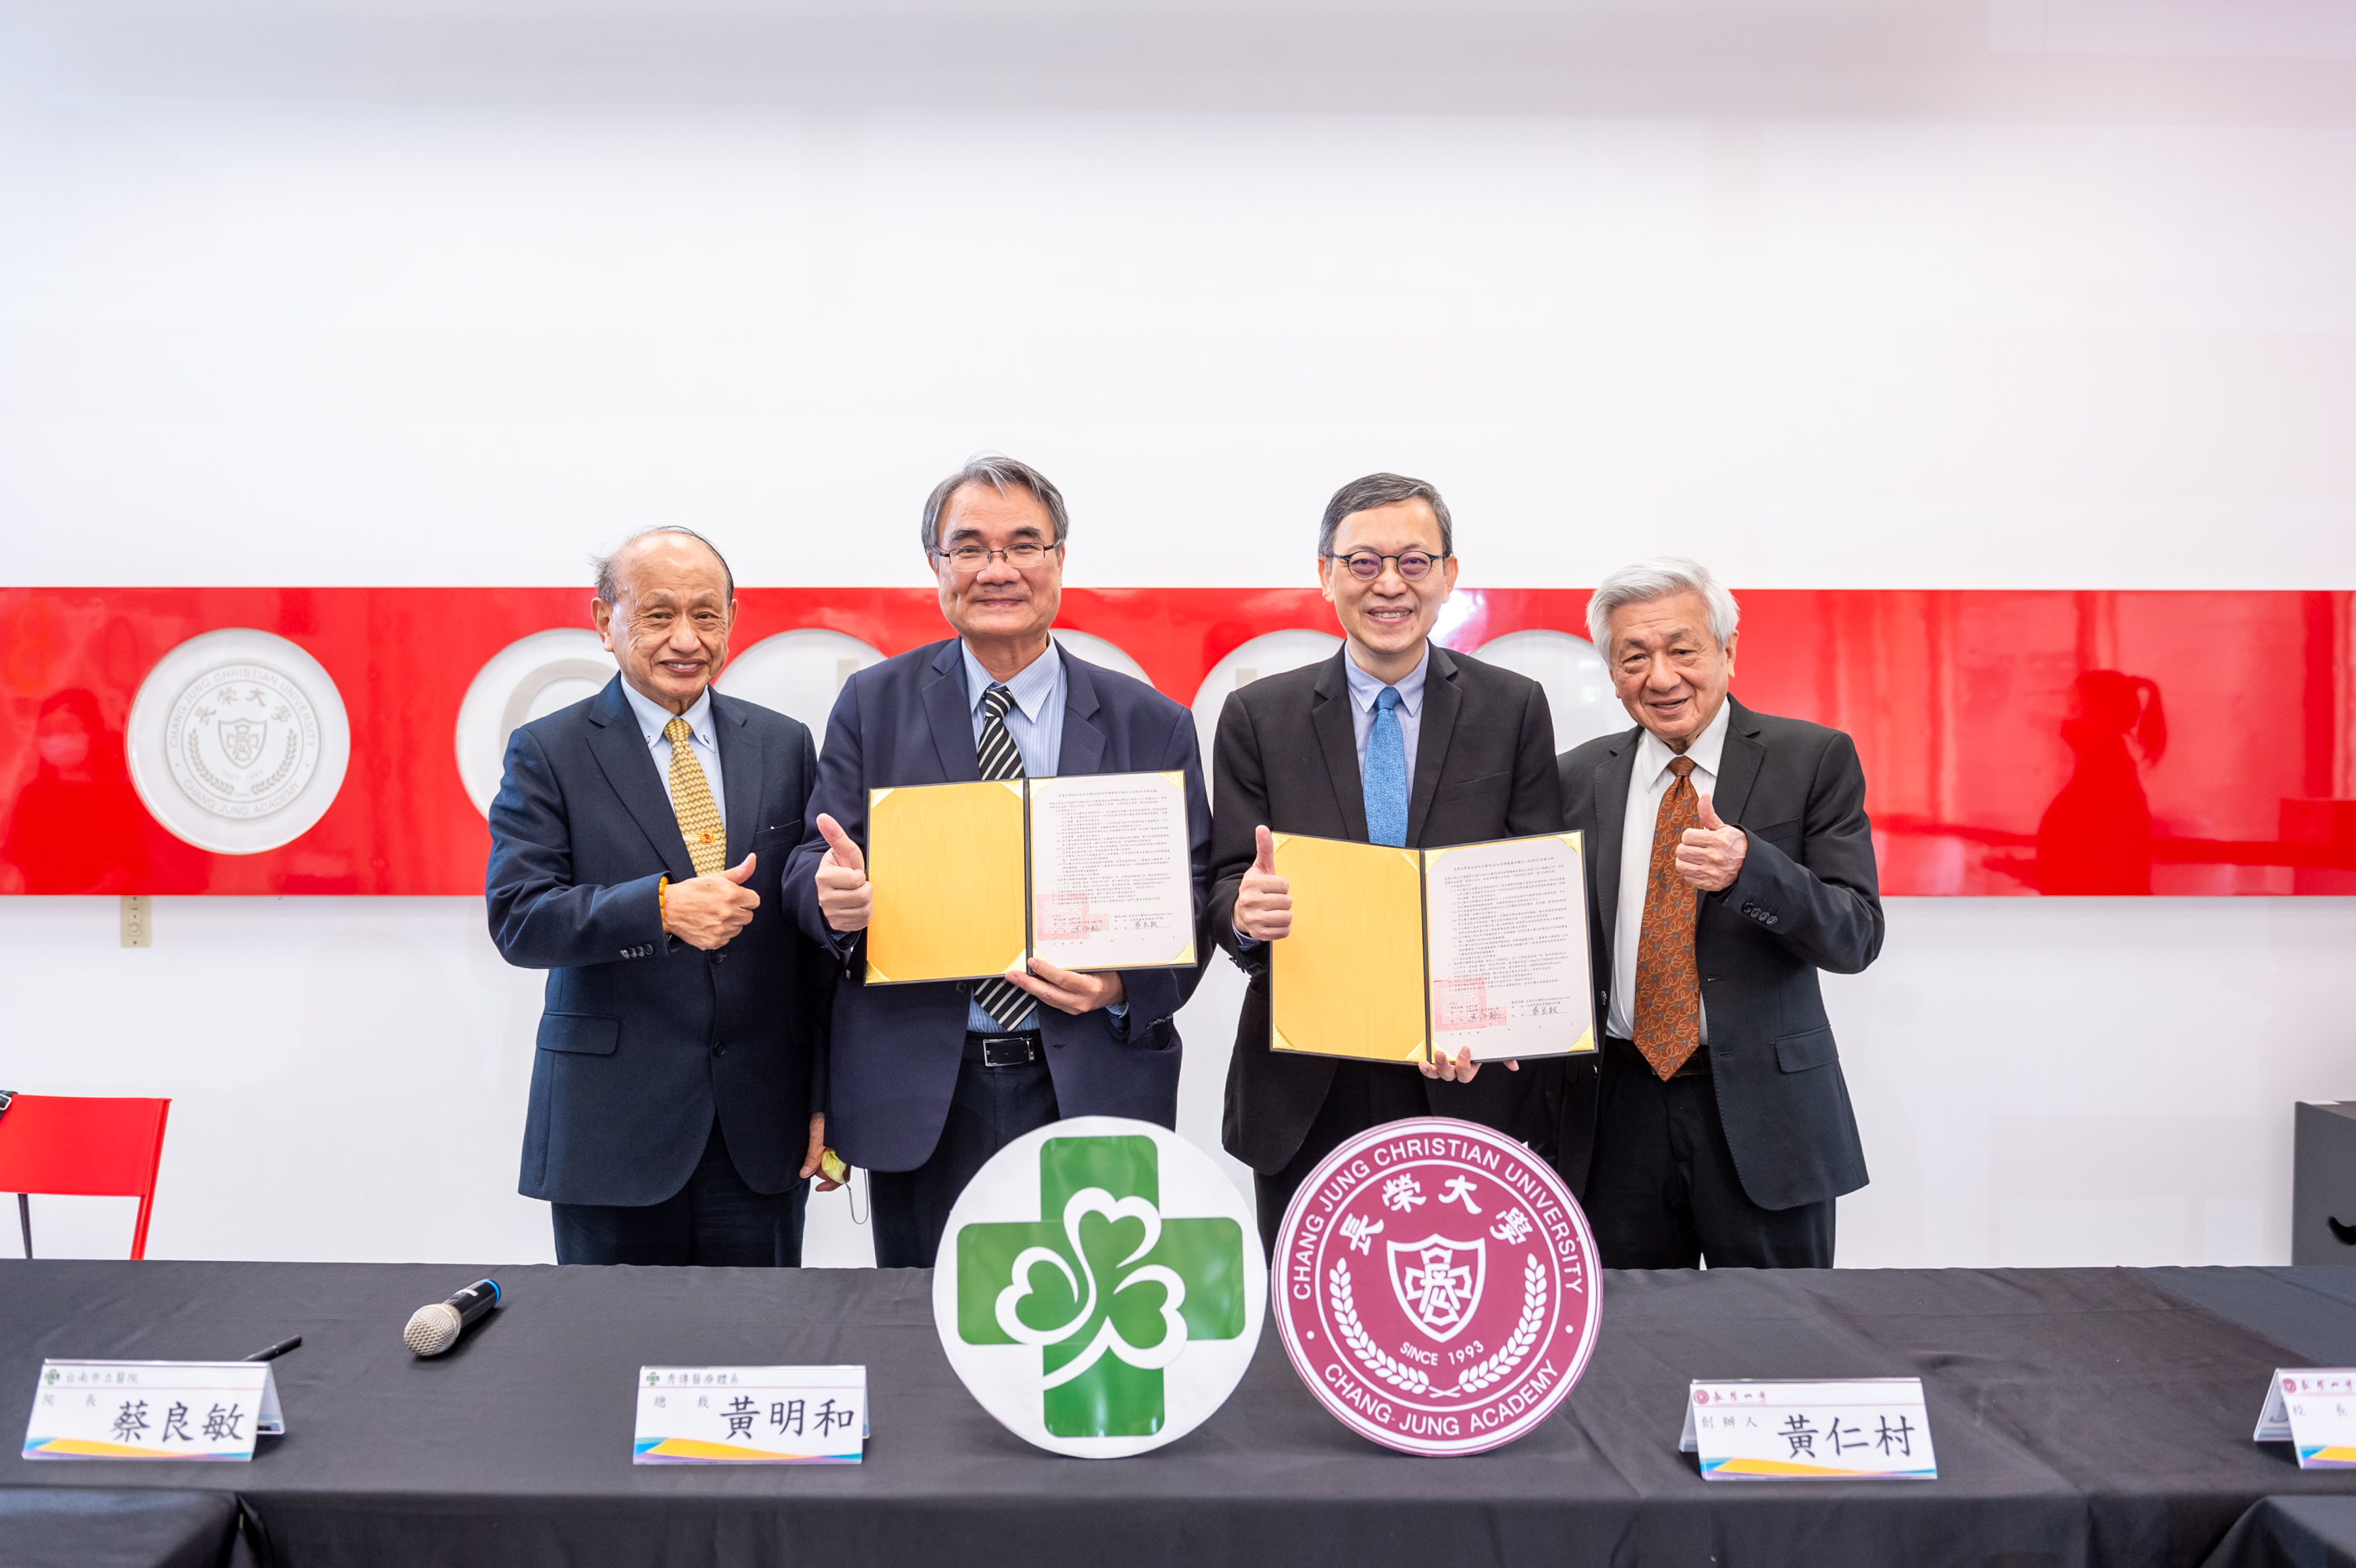 台南市立醫院與長榮大學簽署合作備忘錄  共同打造智慧醫療新紀元